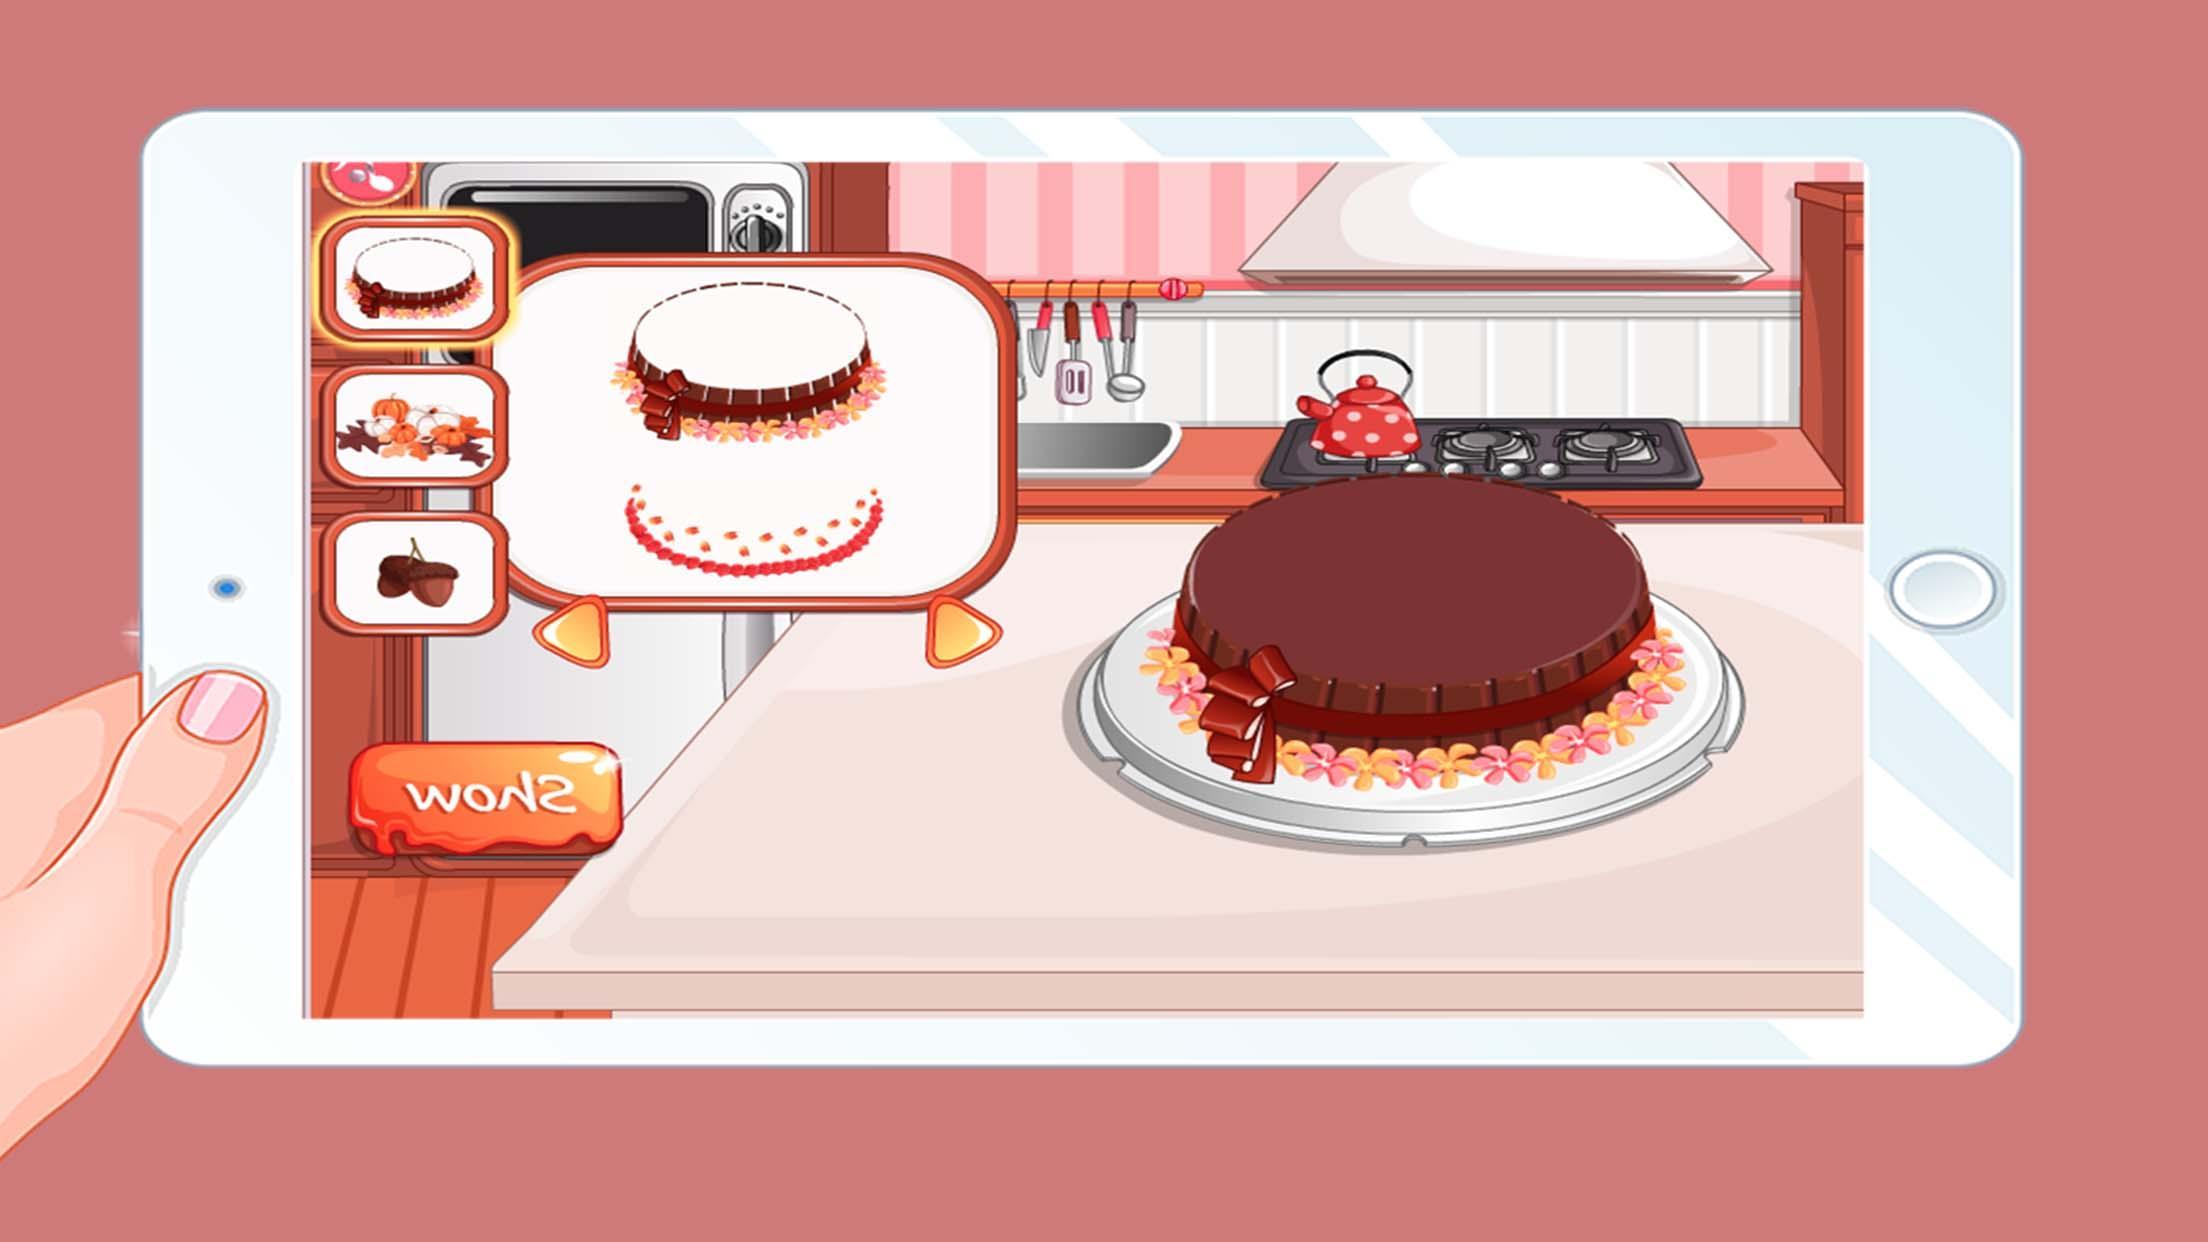 Nuevos Juegos De Cocina Juegos De Cocina Sara For Android Apk Download